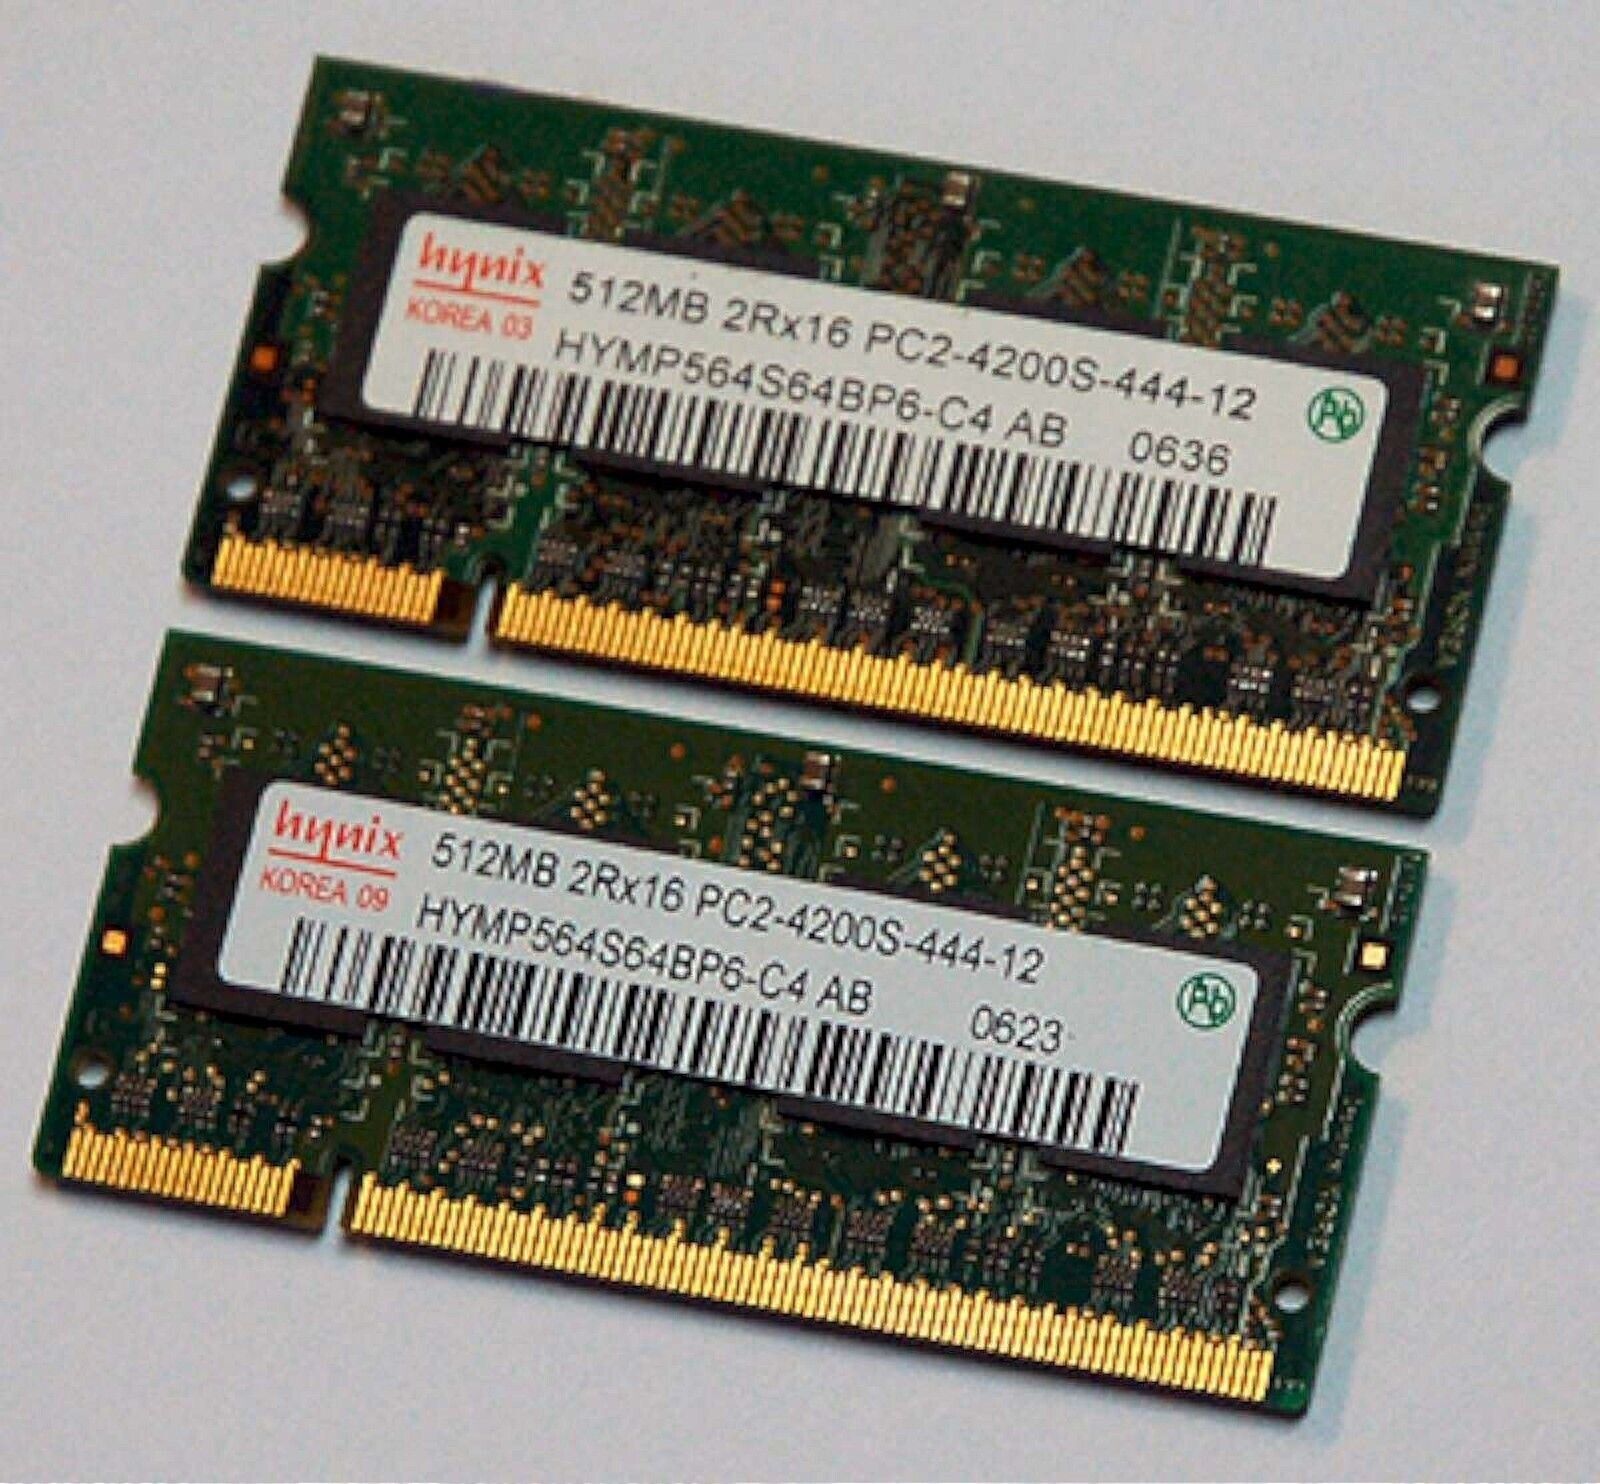 HYNIX Laptop 1GB DDR2 PC4200 RAM 2 X 512MB Sticks V000061770 Pair PC2-4200S-444